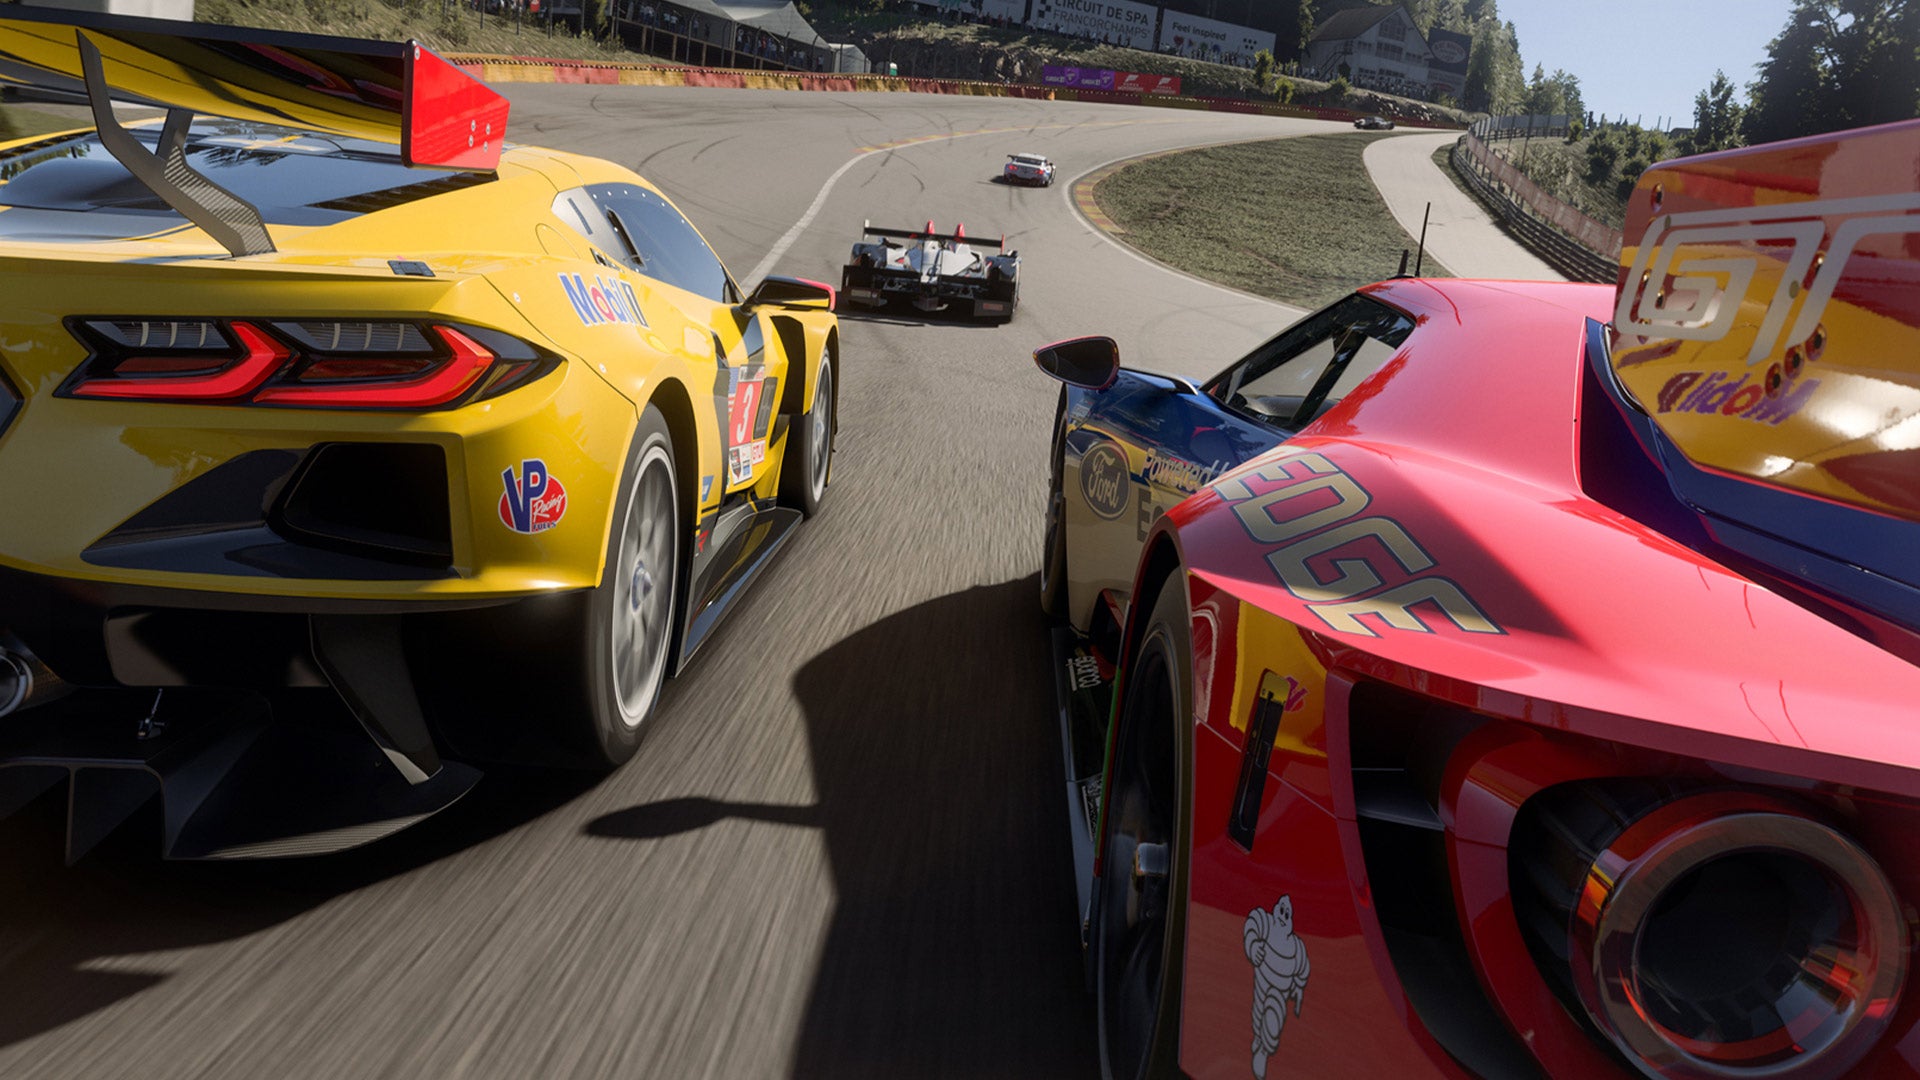 Следующее обновление для Forza Motorsport, которое выйдет на этой неделе, настроит Рейтинг безопасности